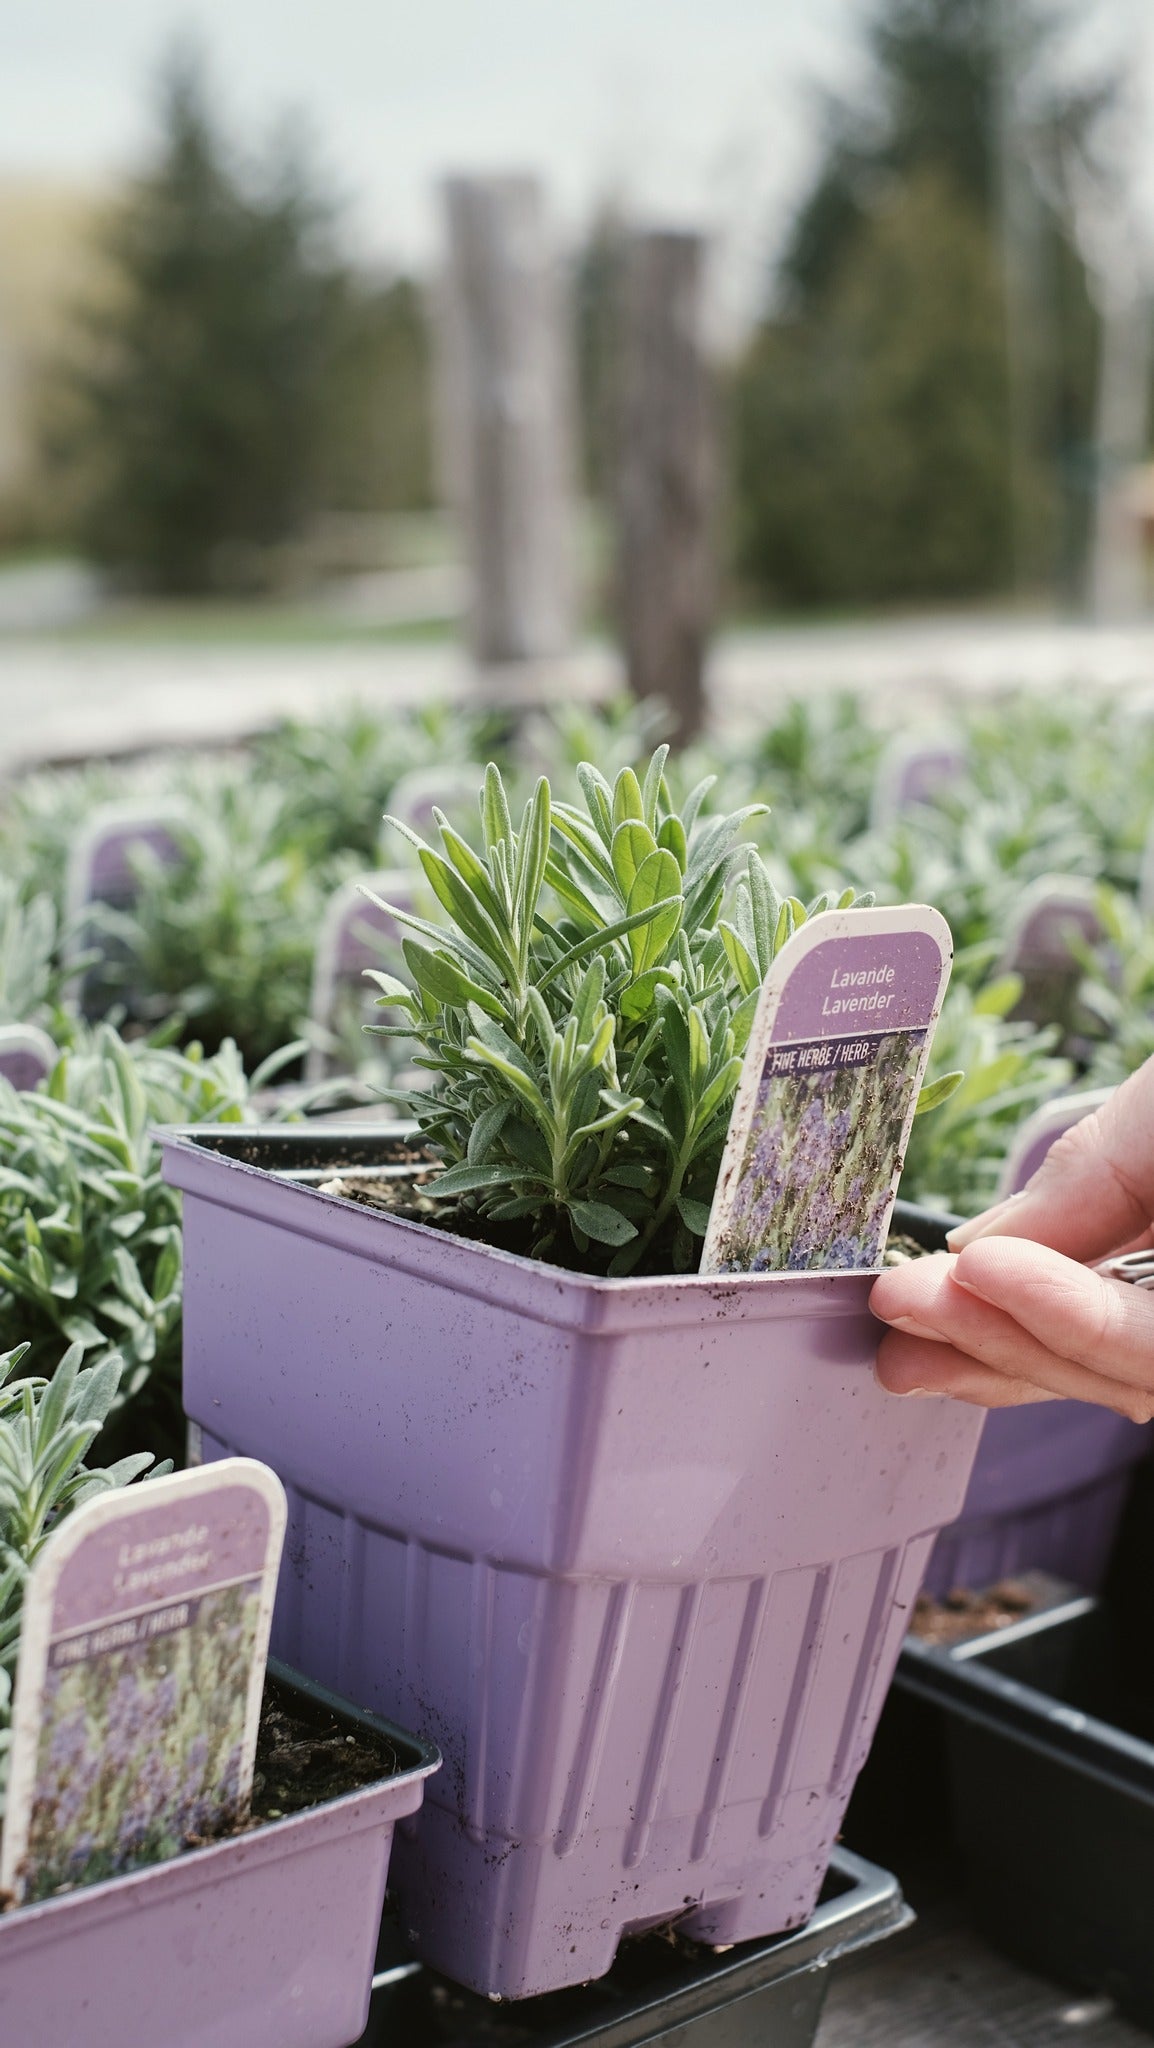 L'entretien des plants de lavande à la Maison || Care of lavender plants at home